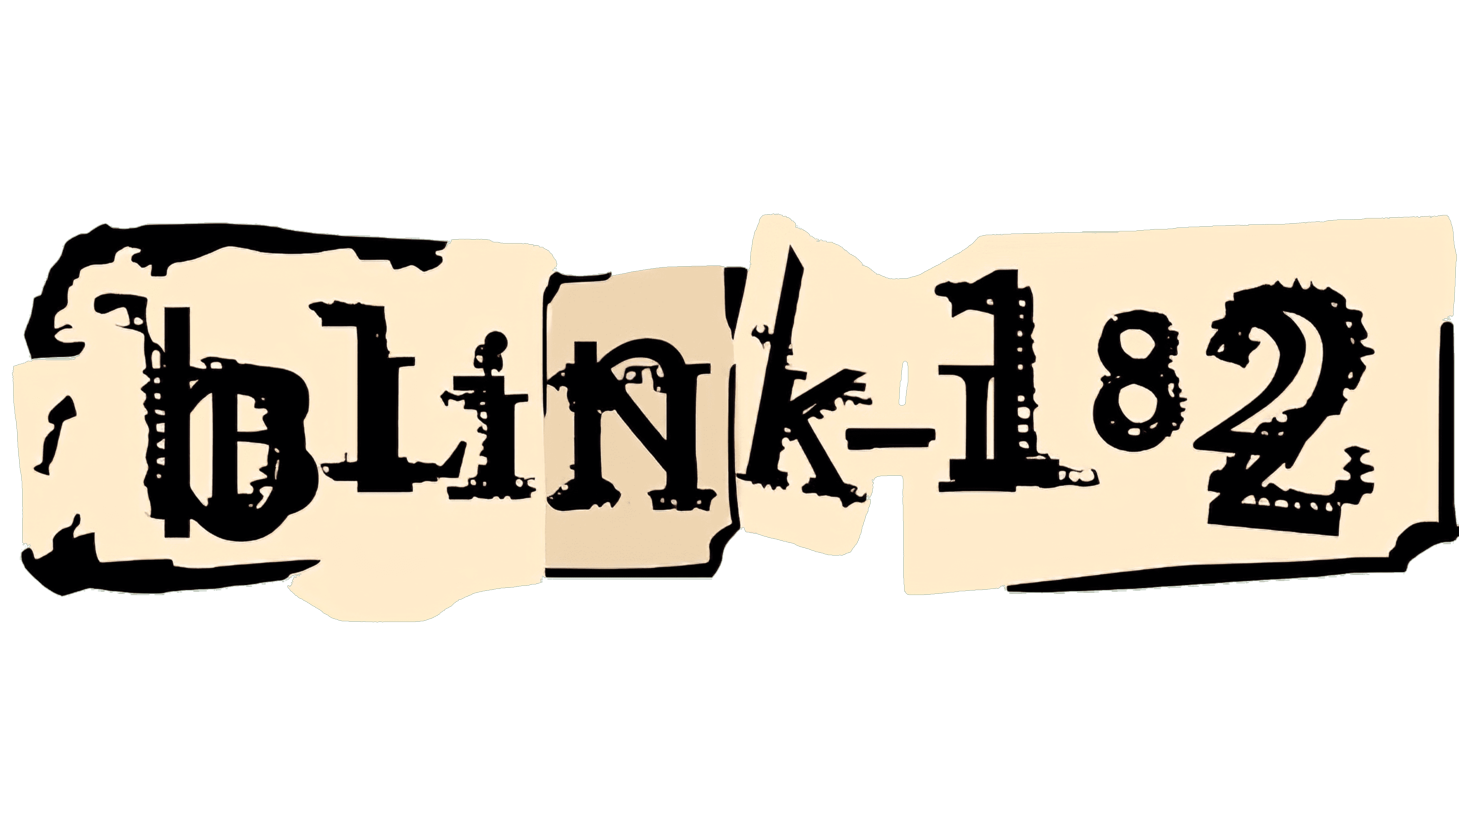 Blink 182 sign 2003 2011